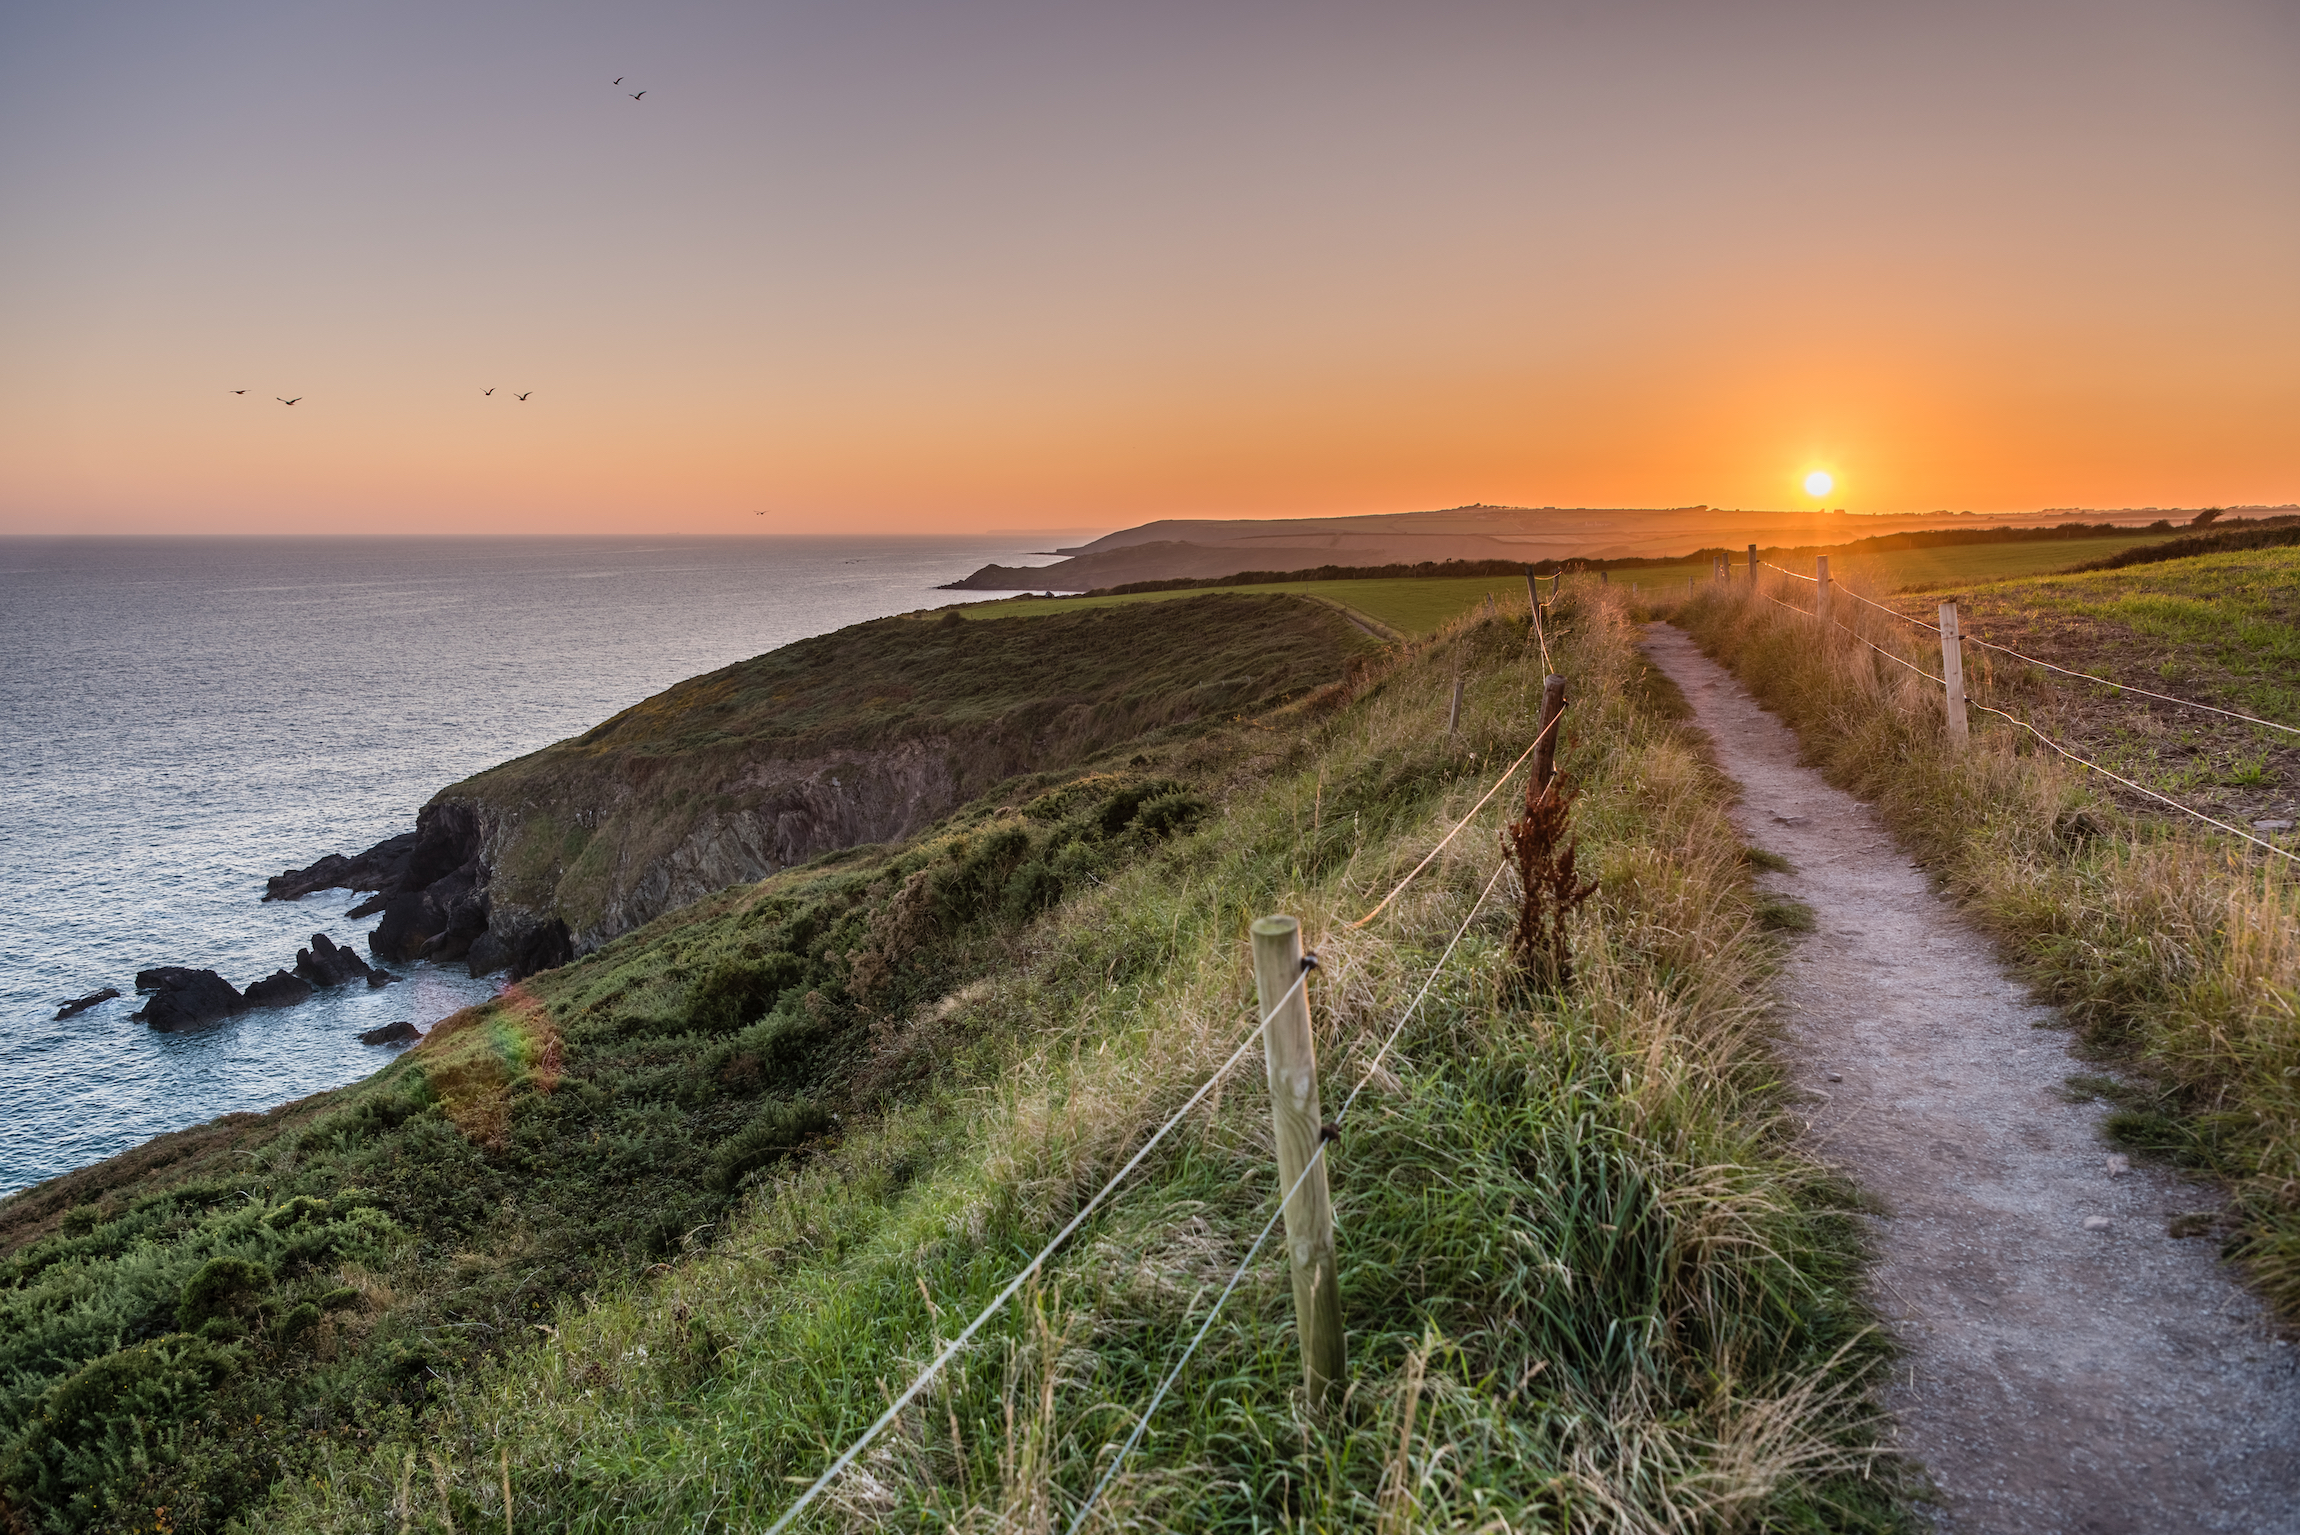 Piękna panorama zachodu słońca na klifie Ballycotton, hrabstwo Cork, Irlandia, o zmierzchu, spokojne morze, zachodzące słońce, samotna ścieżka, popularny szlak turystyczny, zmierzch, ocean